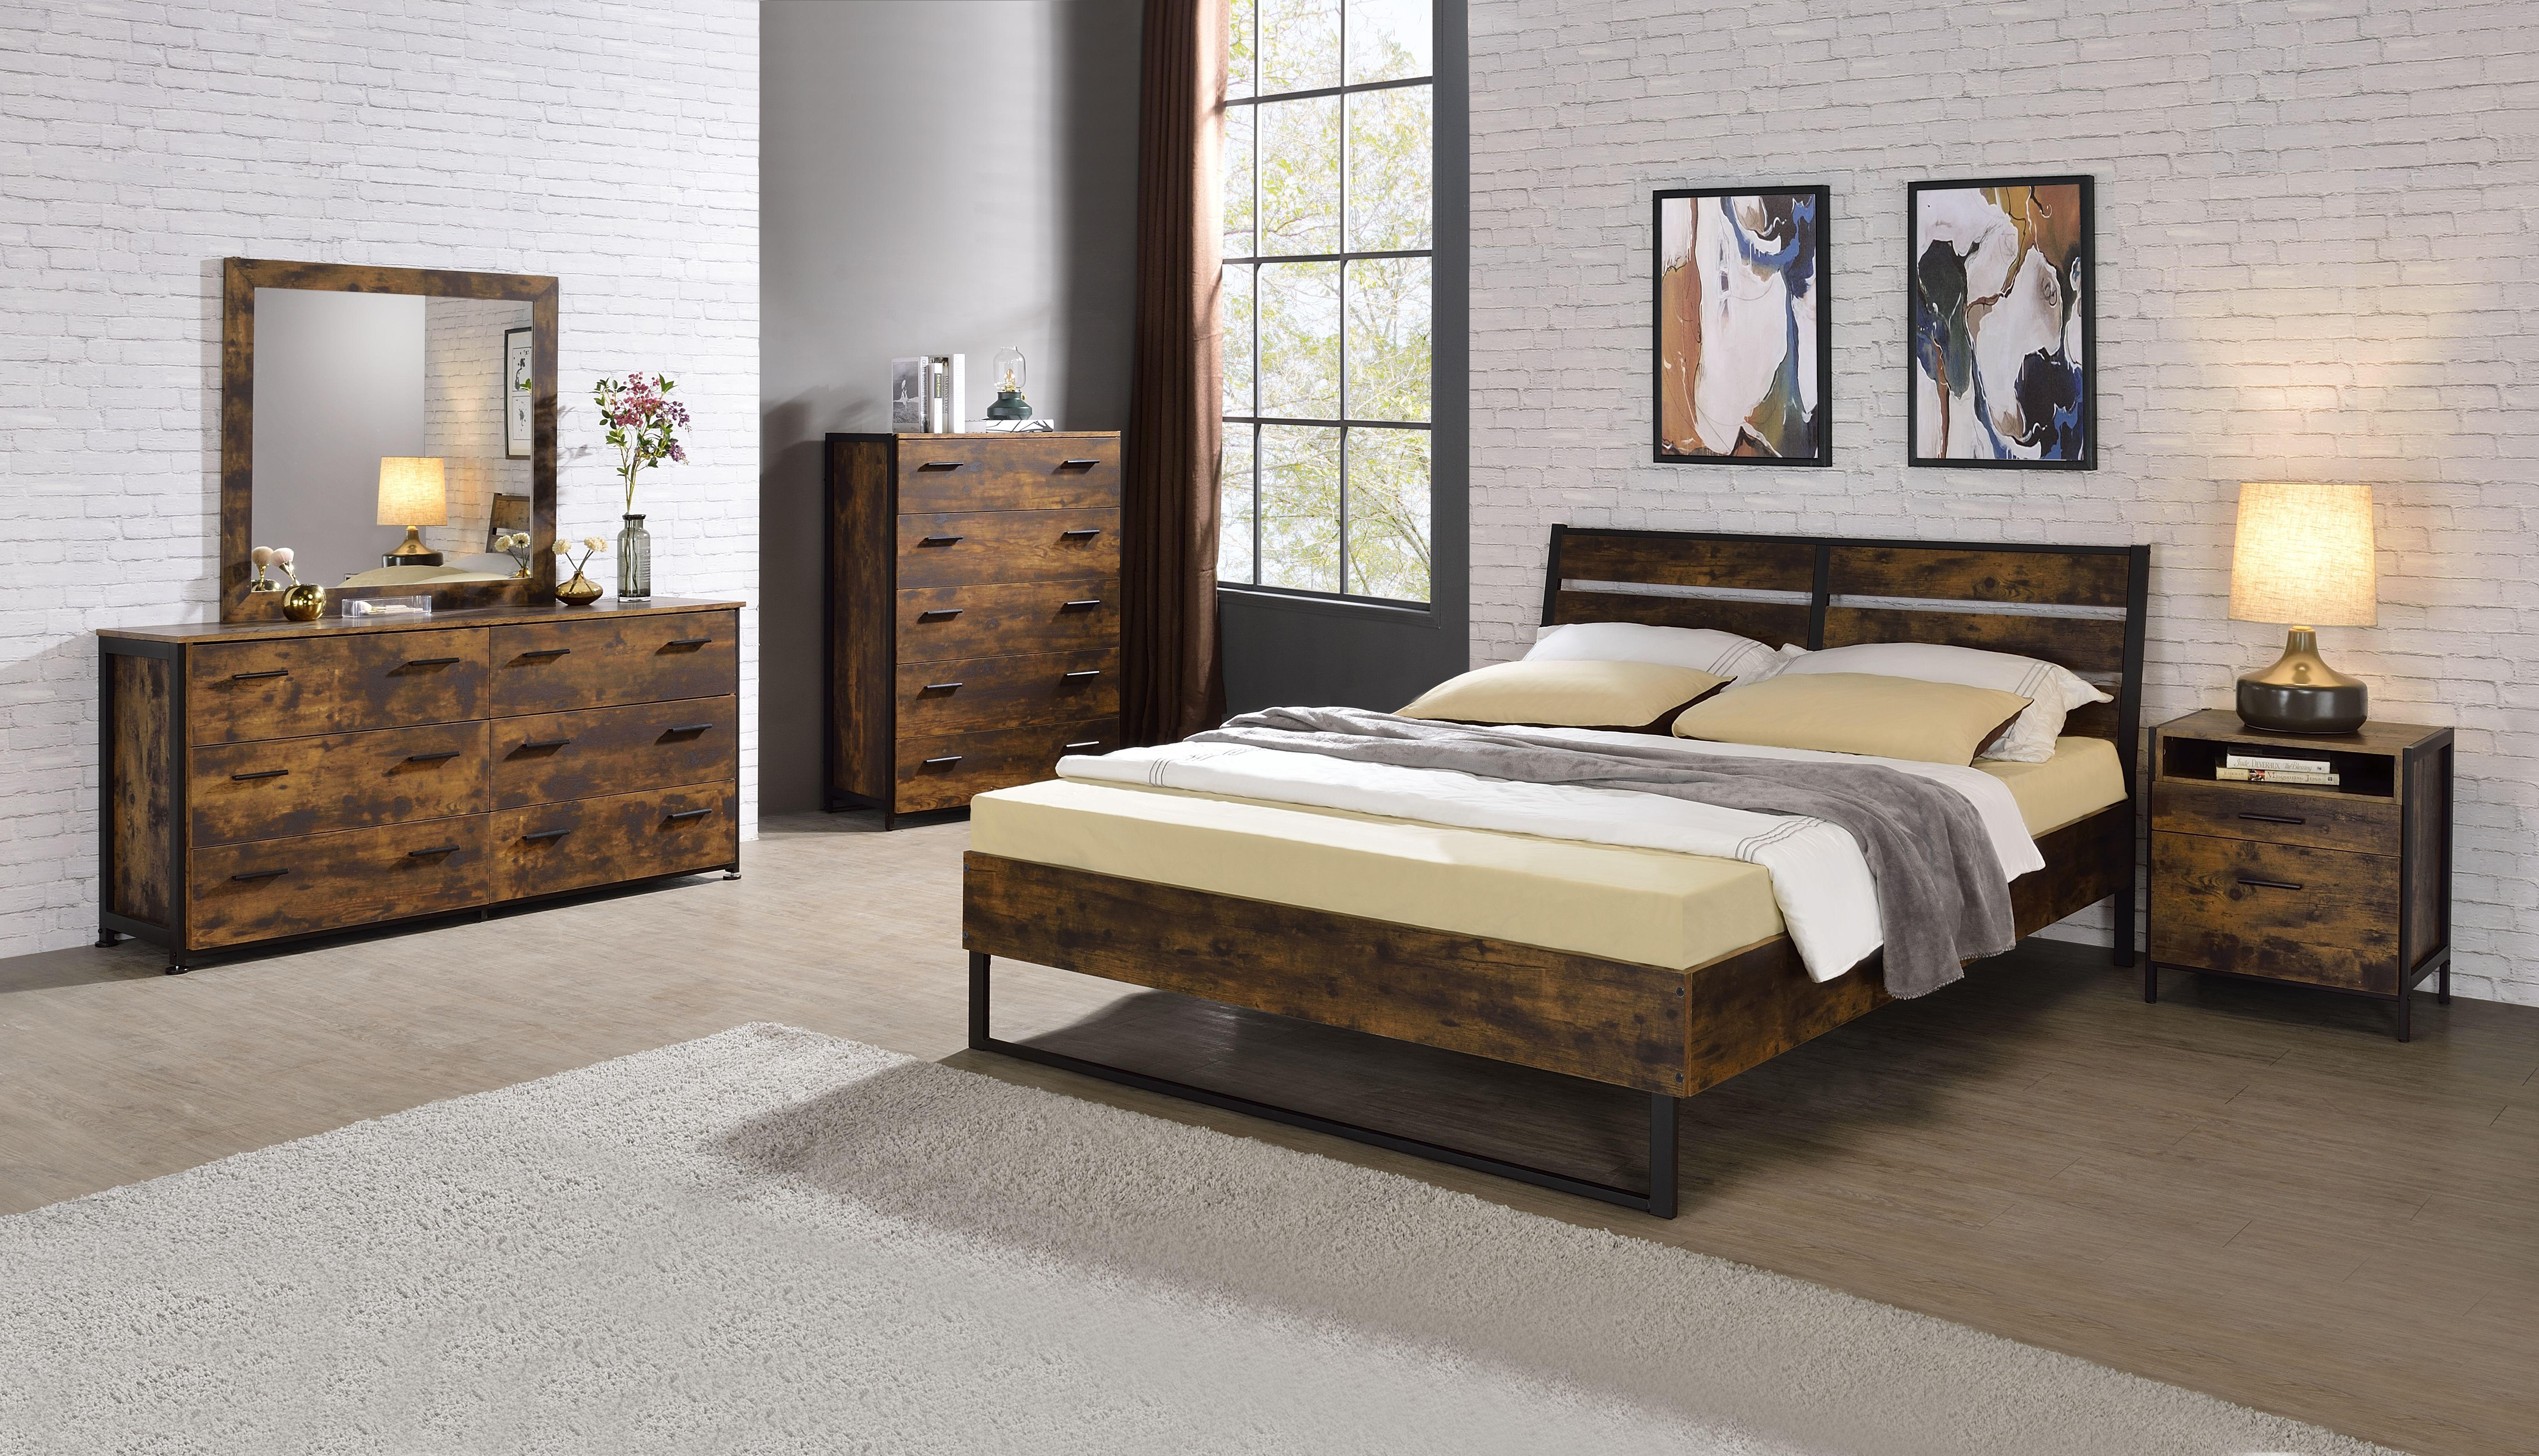 

    
Rustic Oak & Black Finish Eastern King 6pcs Bedroom Set by Acme Juvanth 24247EK-6pcs
